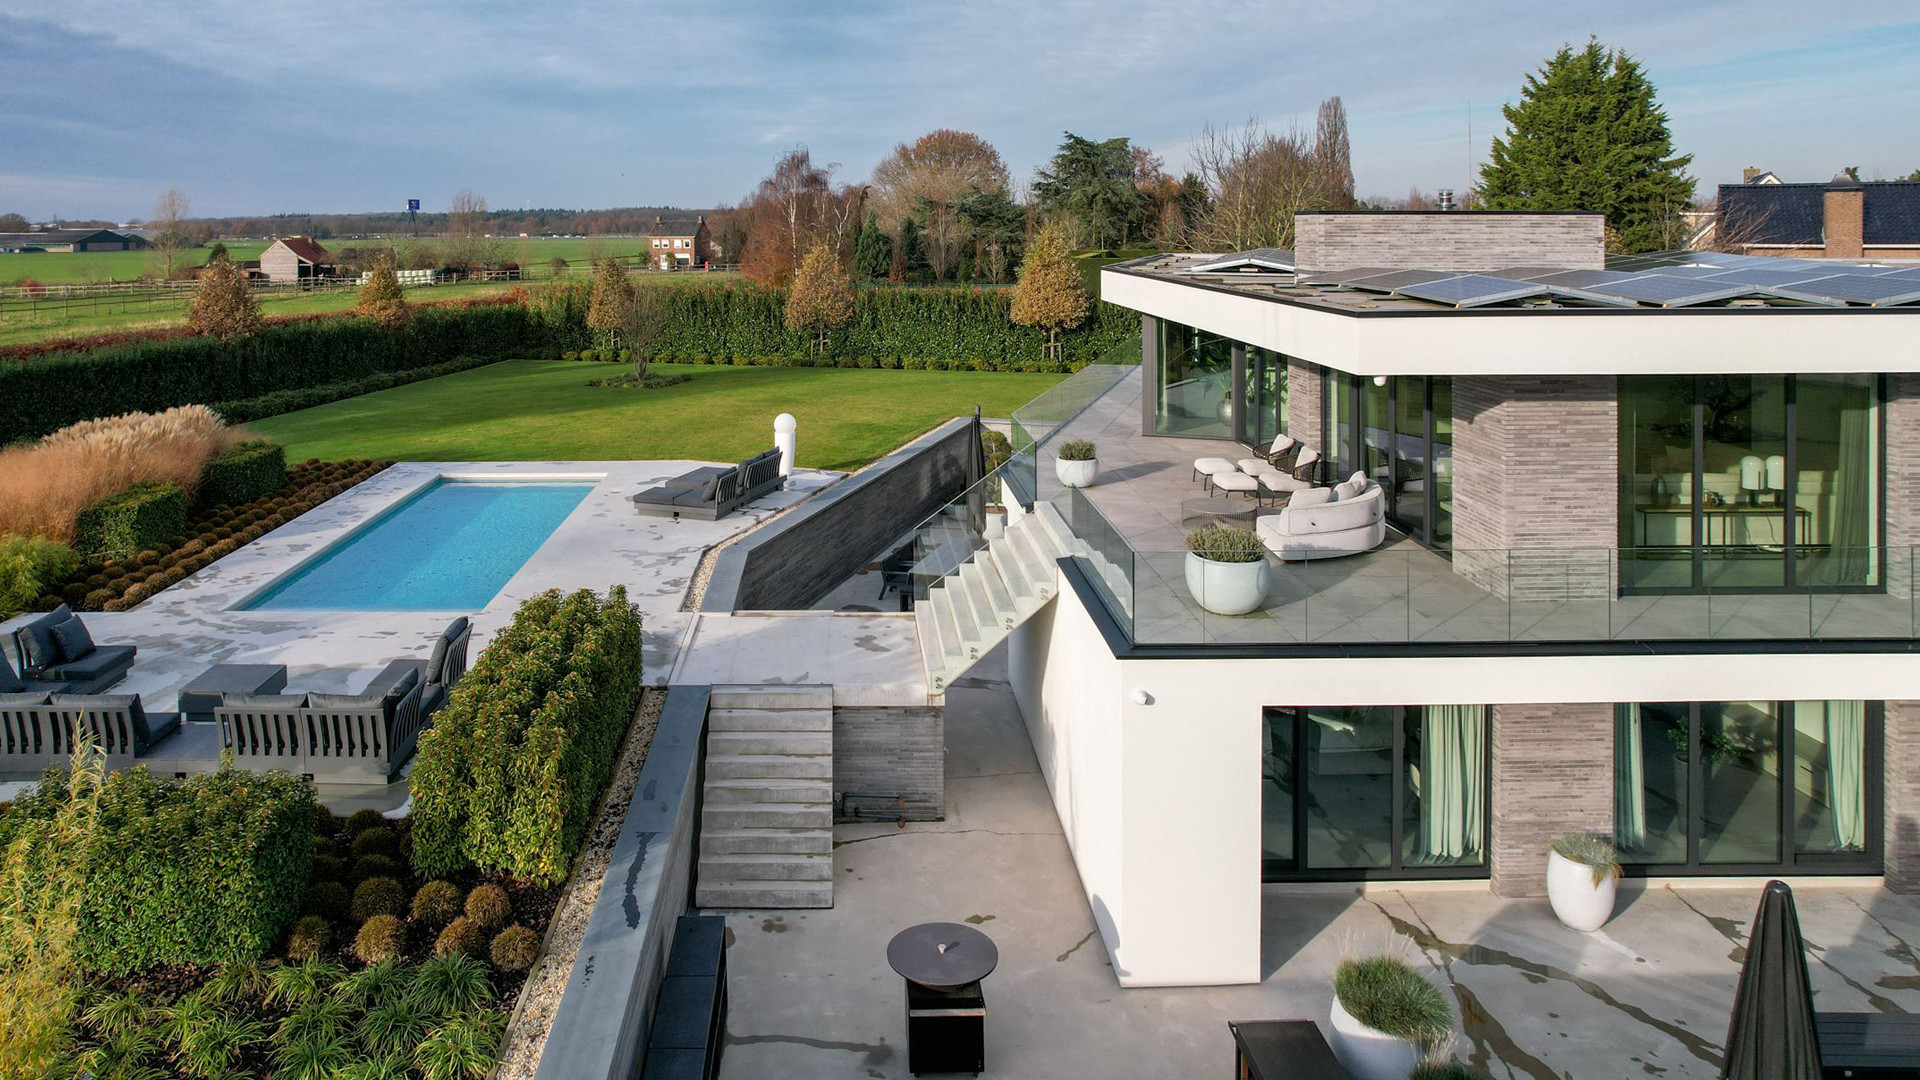 Gio Latooy koopt deze waanzinnig luxe miljoenen villa met verwarmd buitenzwembad. Zie foto's 6